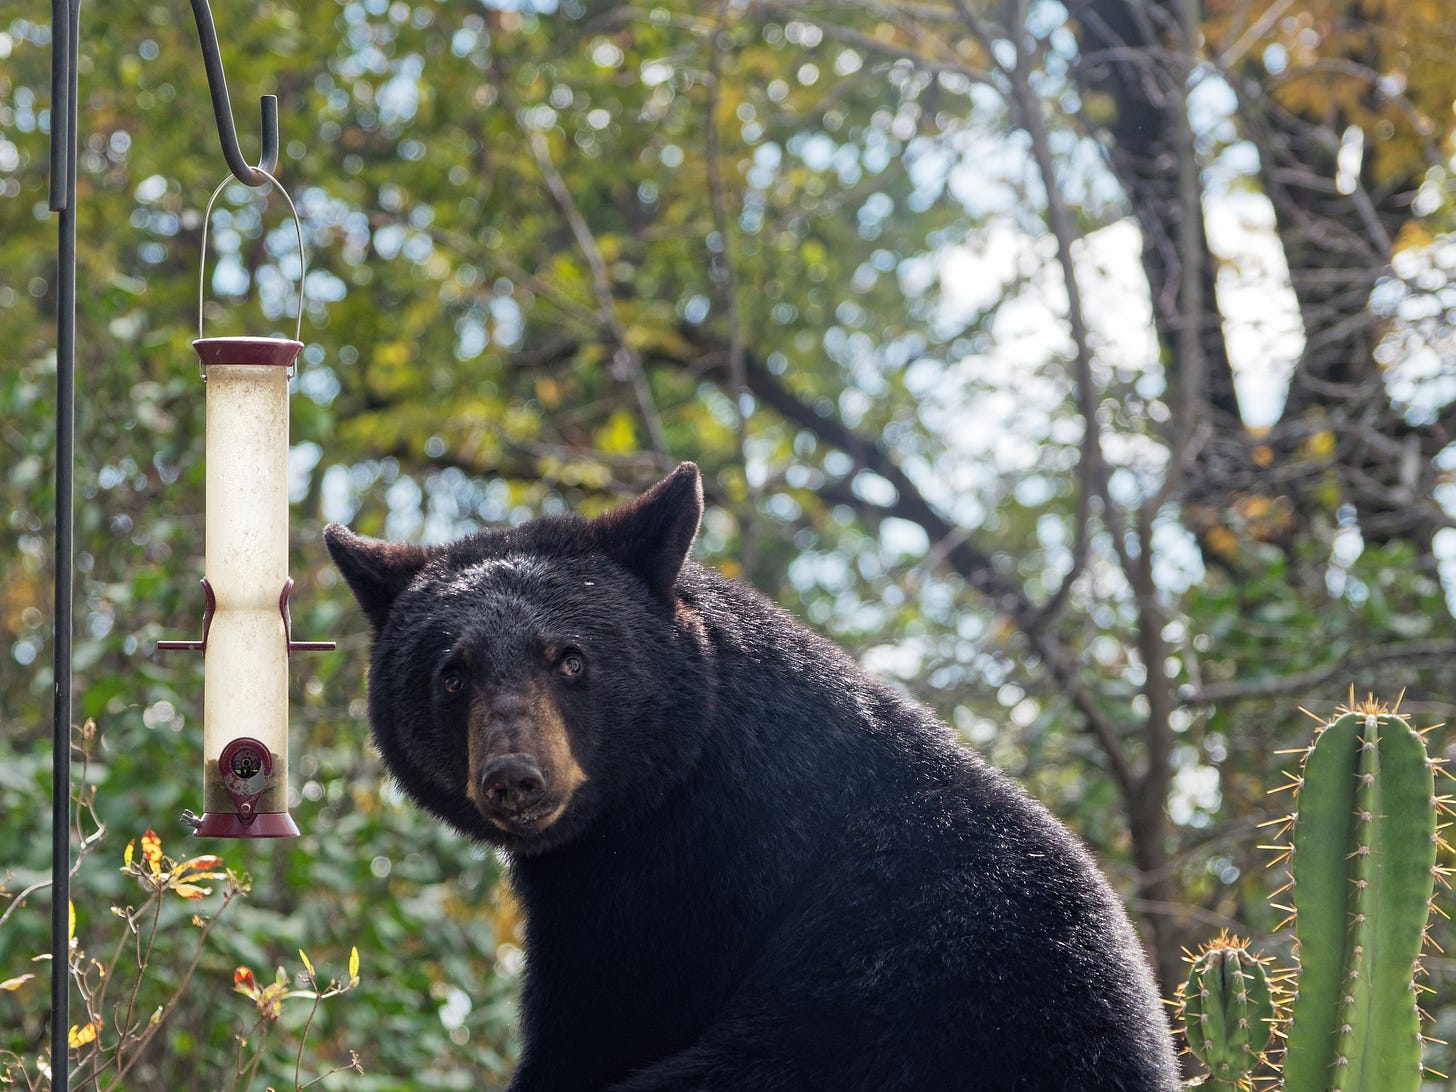 Bear at bird feeder